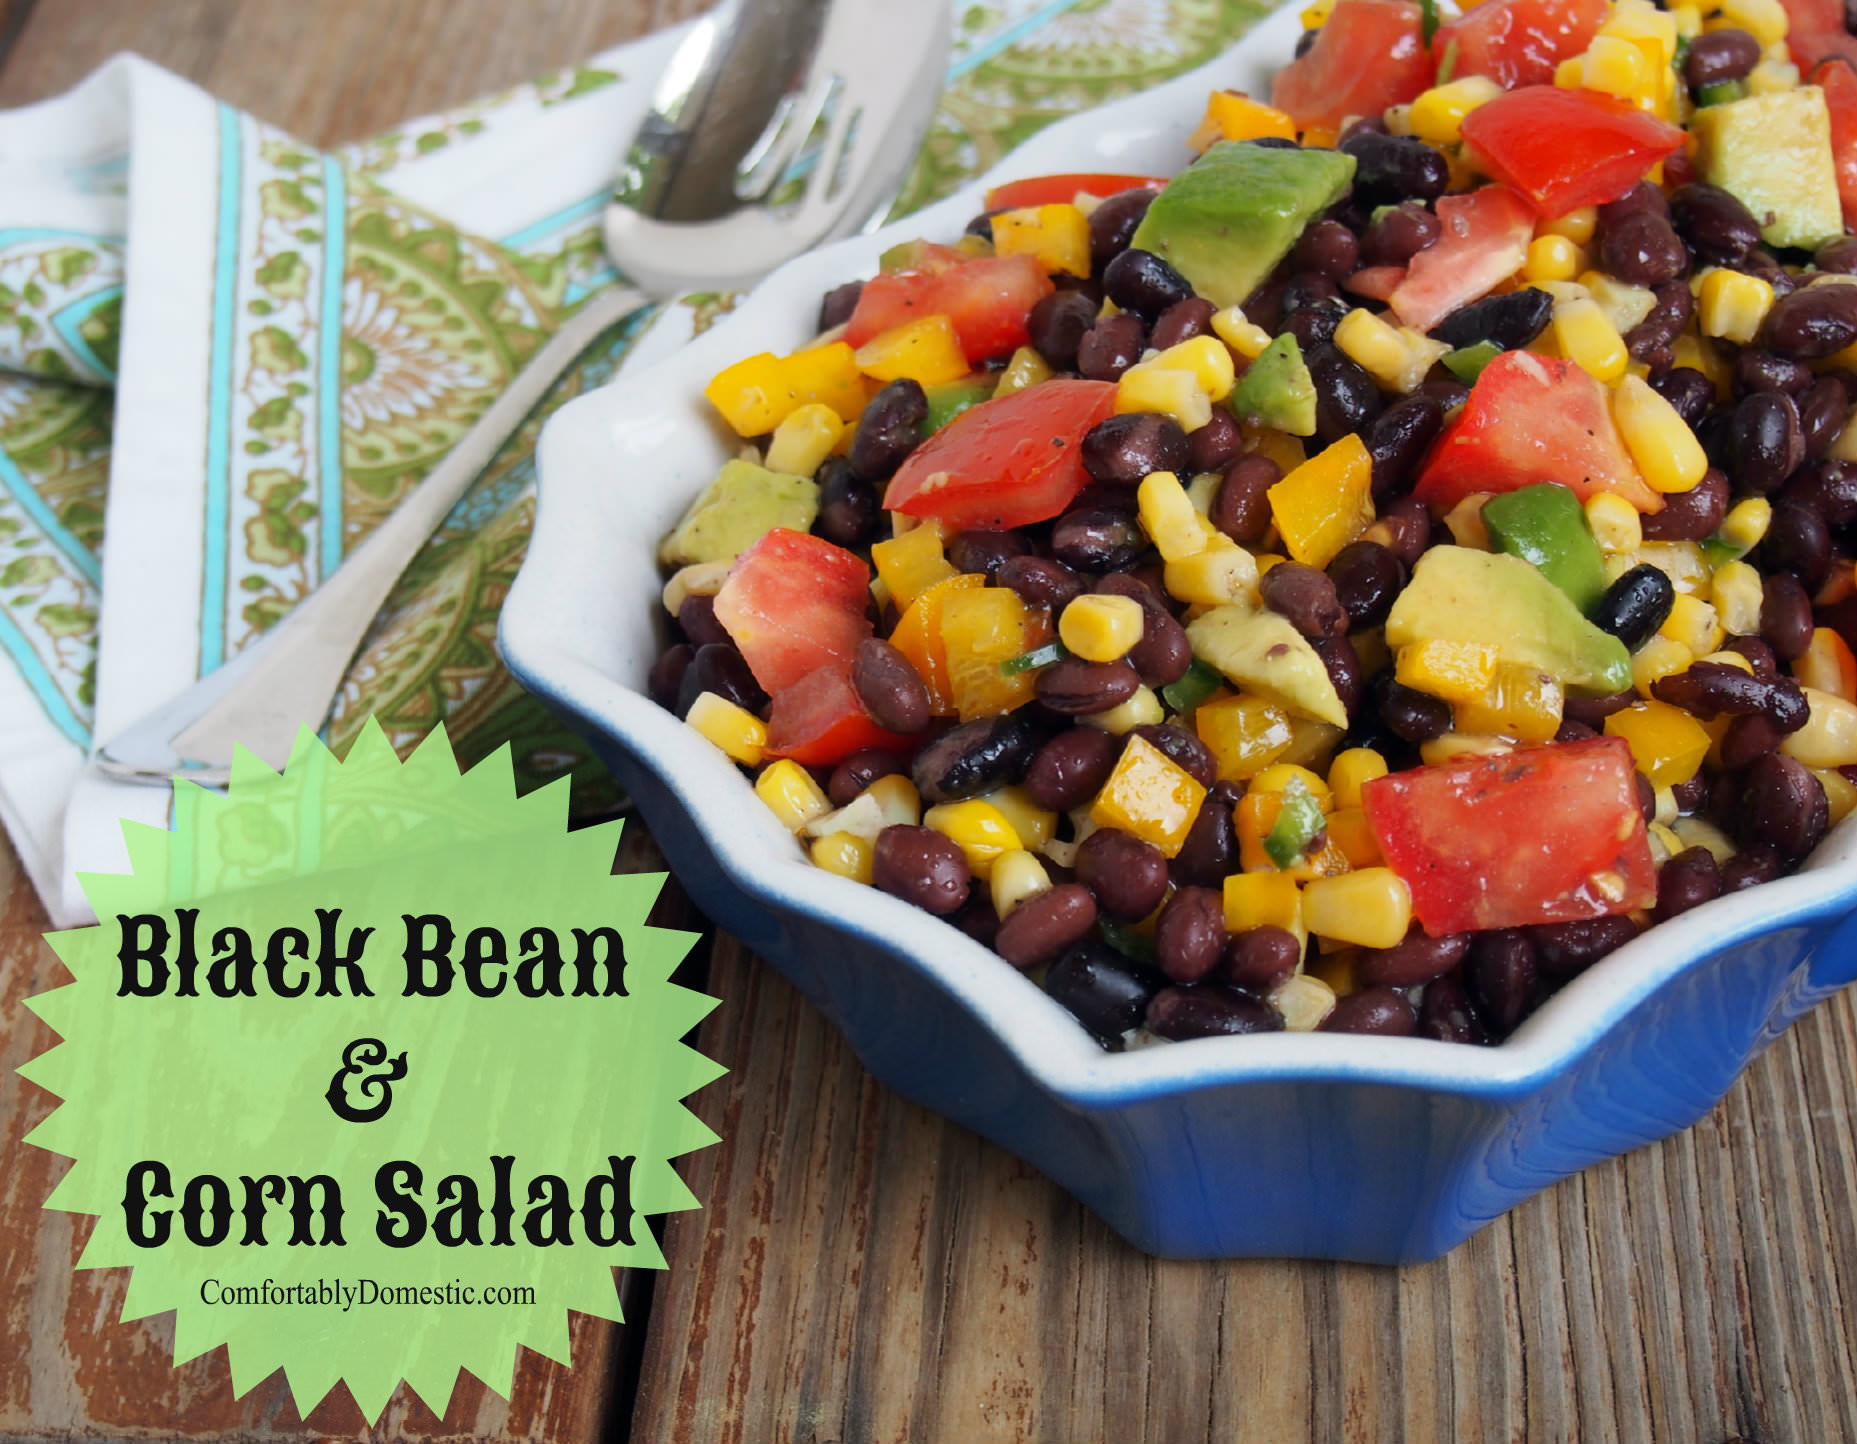 Black Bean Salad Recipes Healthy
 Black Bean Corn Salad Healthy Recipes fortably Domestic